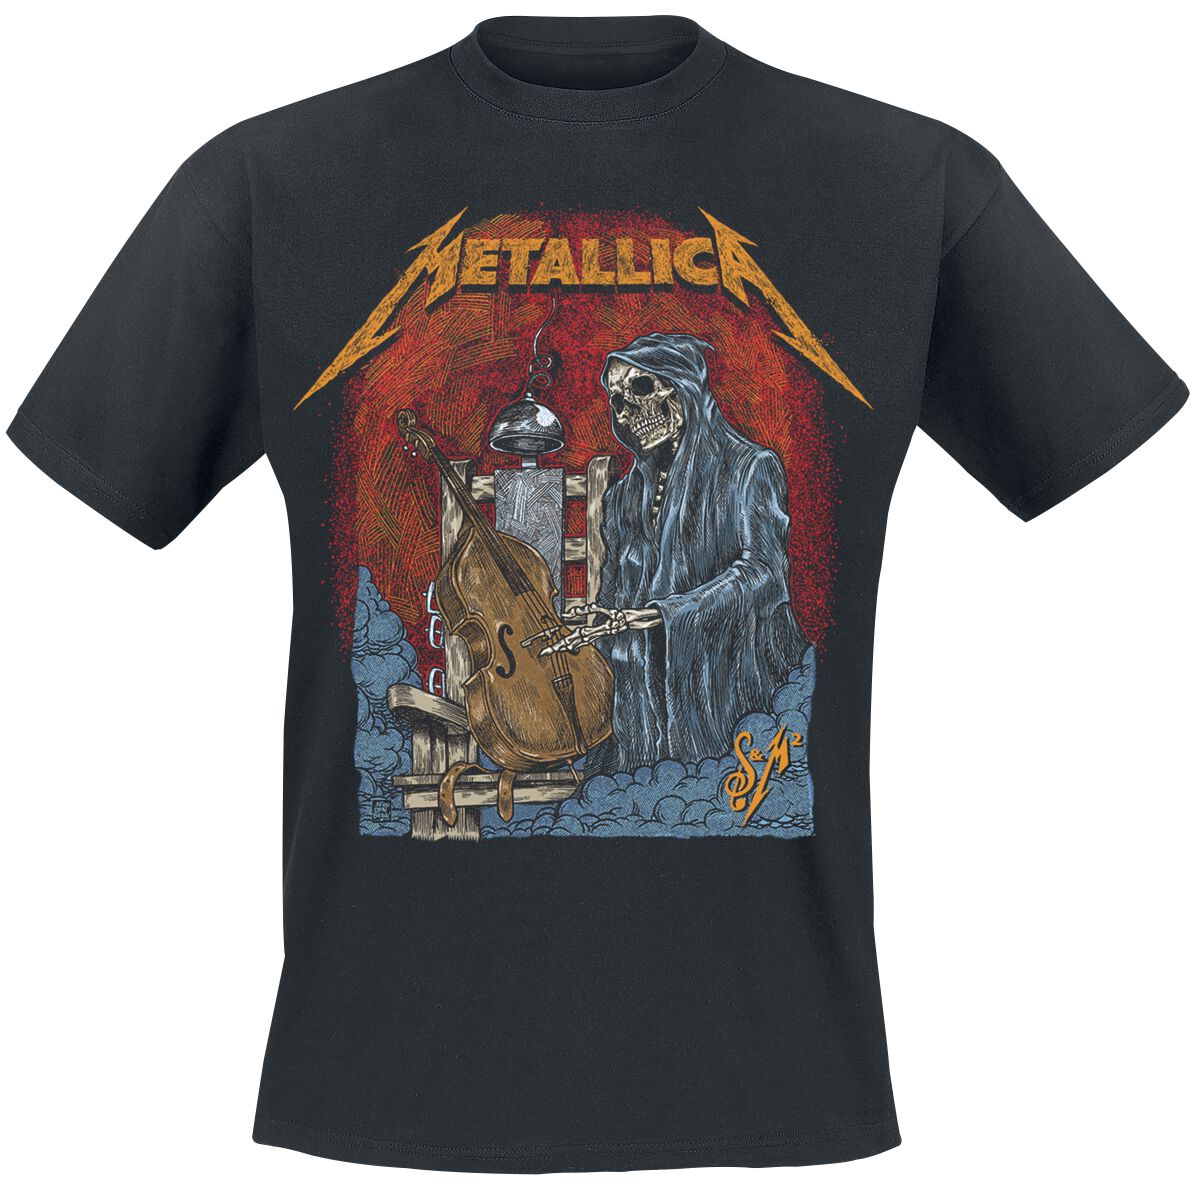 Metallica T-Shirt - S&M2 Cello Reaper - S bis 5XL - für Männer - Größe S - schwarz  - Lizenziertes Merchandise!